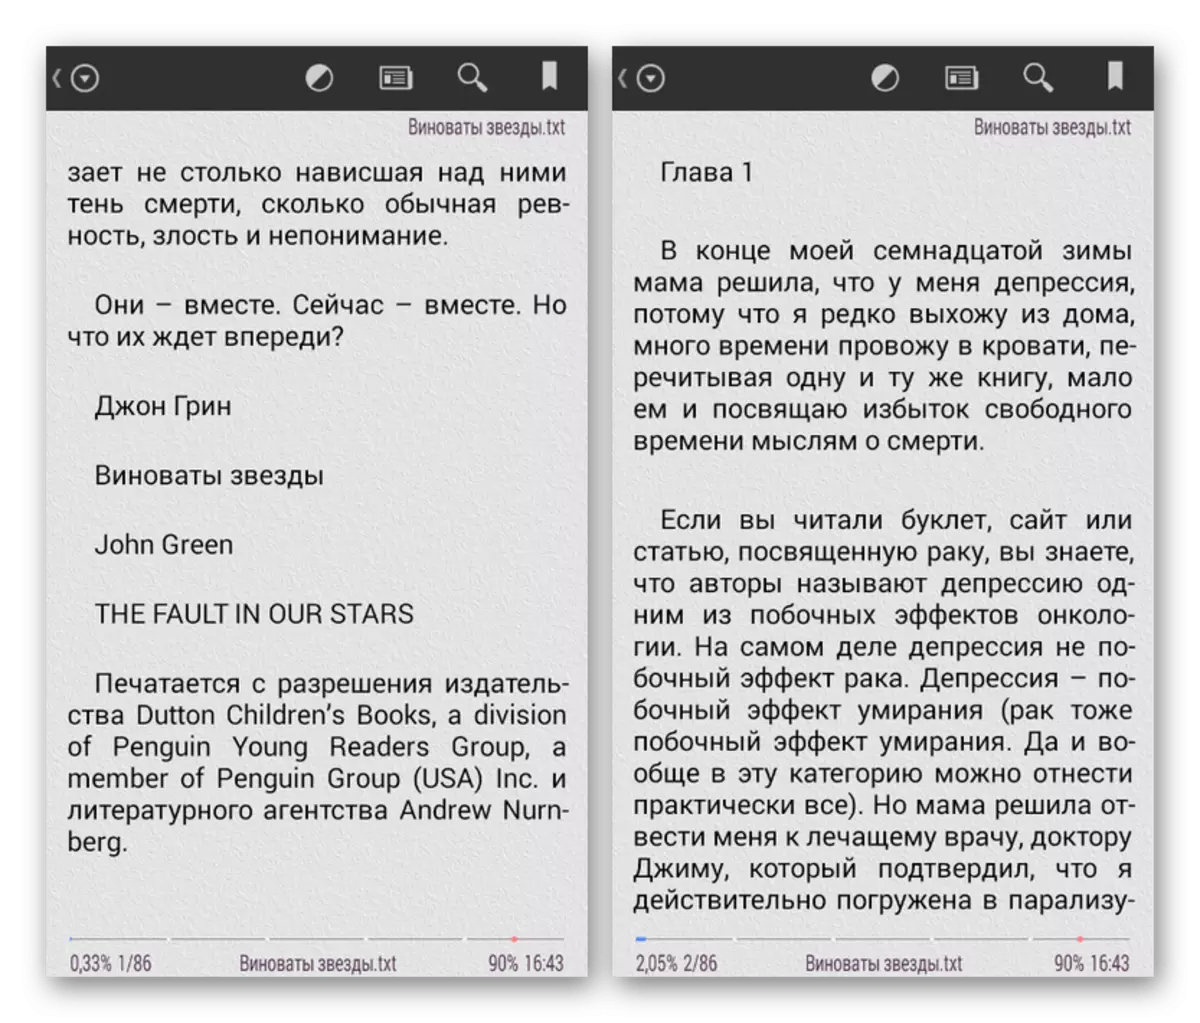 Beispiel eines Buches im TXT-Format auf Android